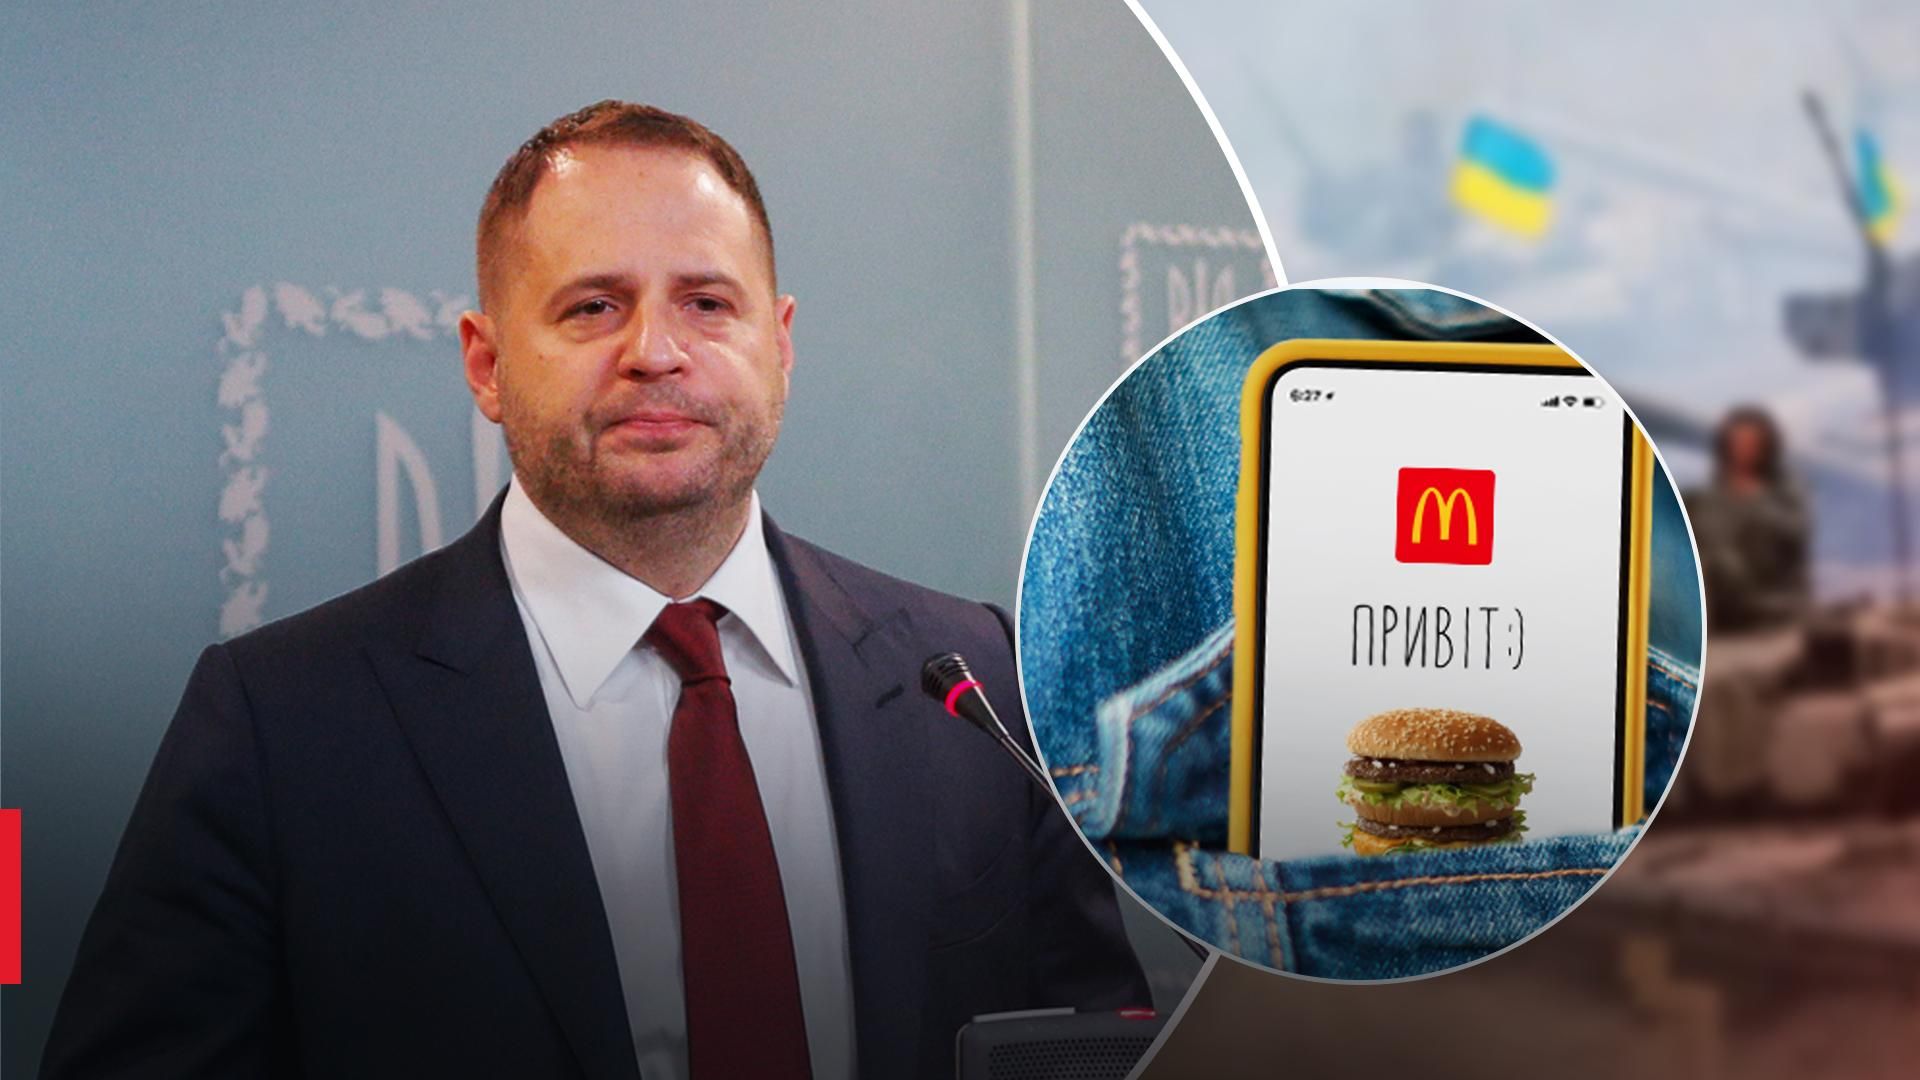 Ермак бургером и картофелем фри приветствовал возвращение McDonald's в Украину - 24 Канал